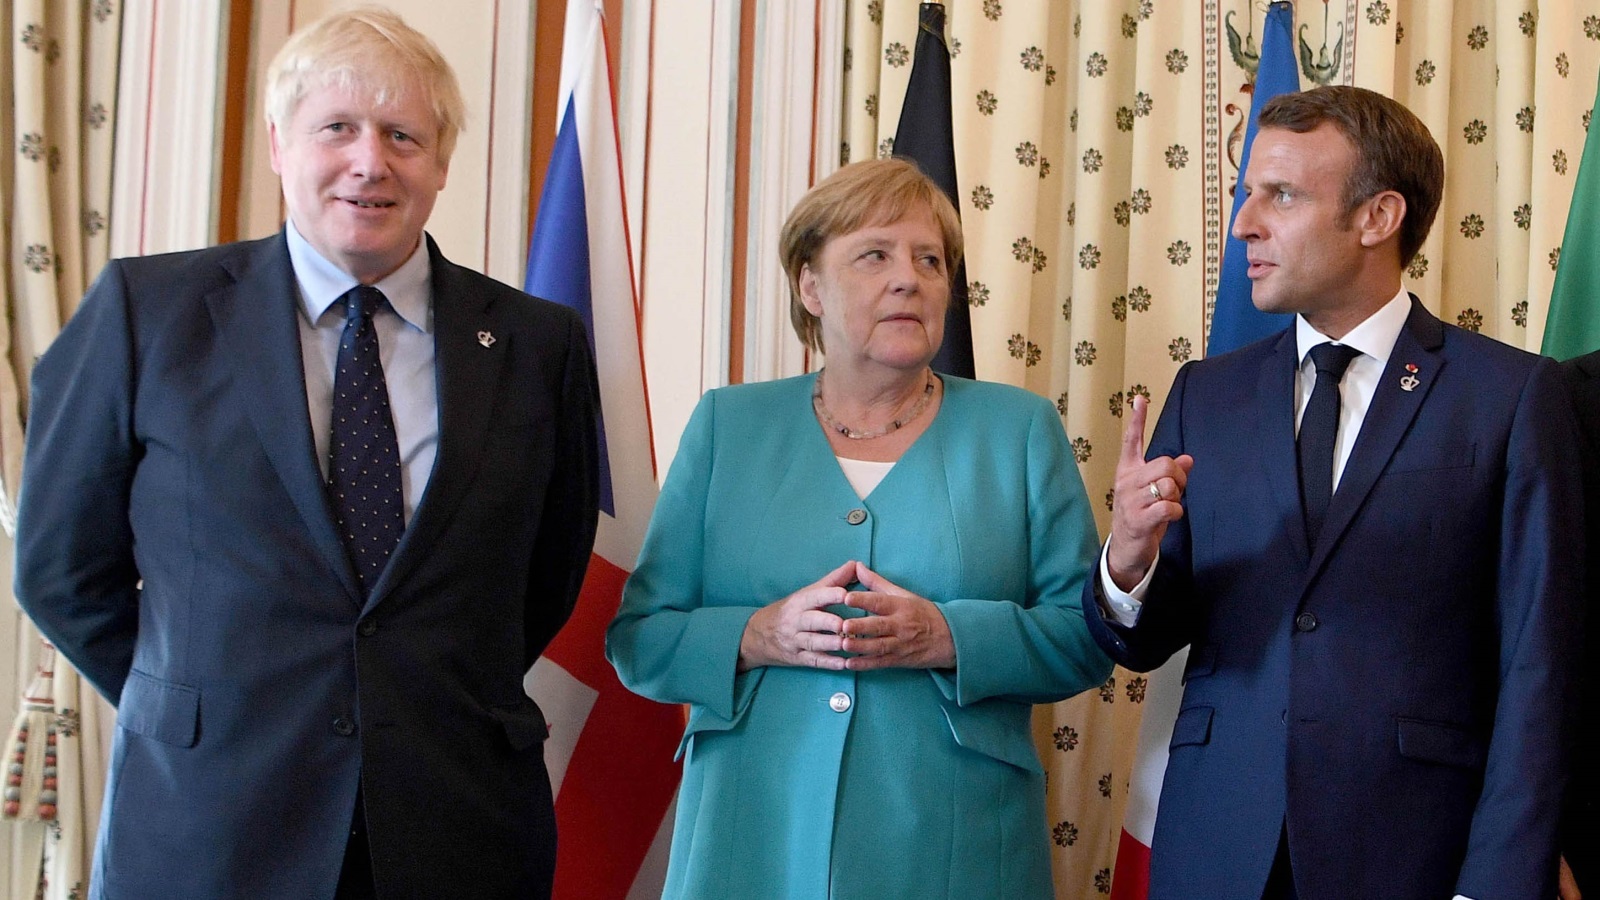 ‪فرنسا وألمانيا وبريطانيا اتفقت على تفعيل آلية حل الخلافات المتعلقة بالاتفاق النووي‬ فرنسا وألمانيا وبريطانيا اتفقت على تفعيل آلية حل الخلافات المتعلقة بالاتفاق النووي (غيتي)